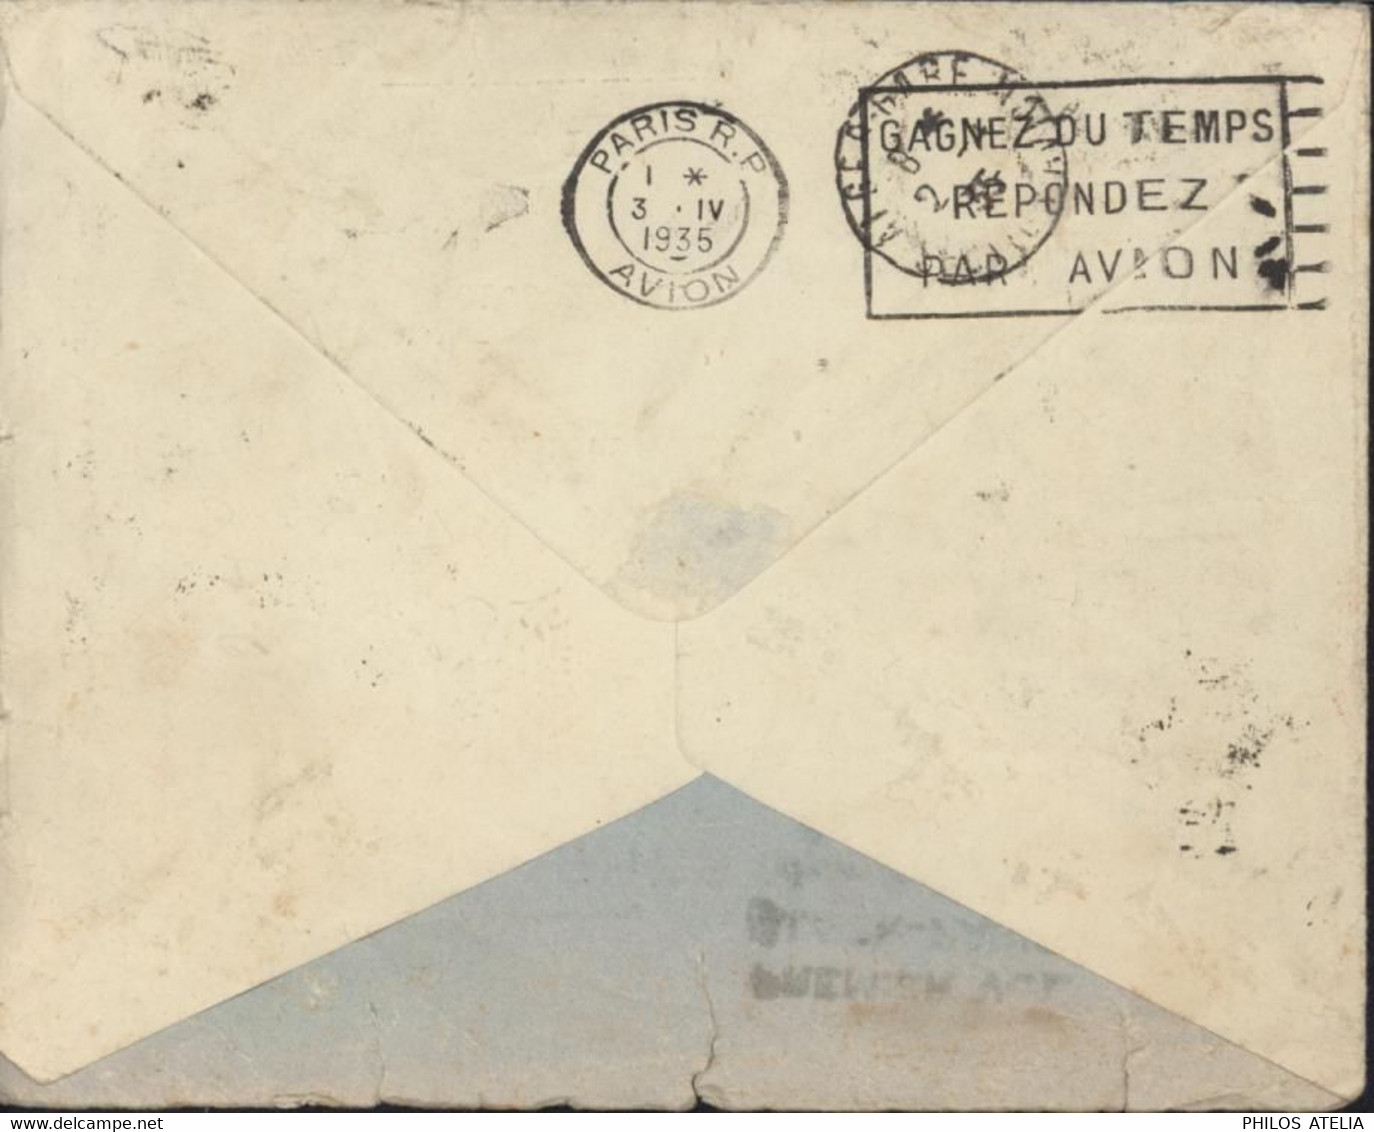 Superbe Enveloppe Illustrée Du Maghreb Par Avion Cachet Premier Vol Alger Paris 2 4 1935 Cinématographes J Seiberras - Airmail